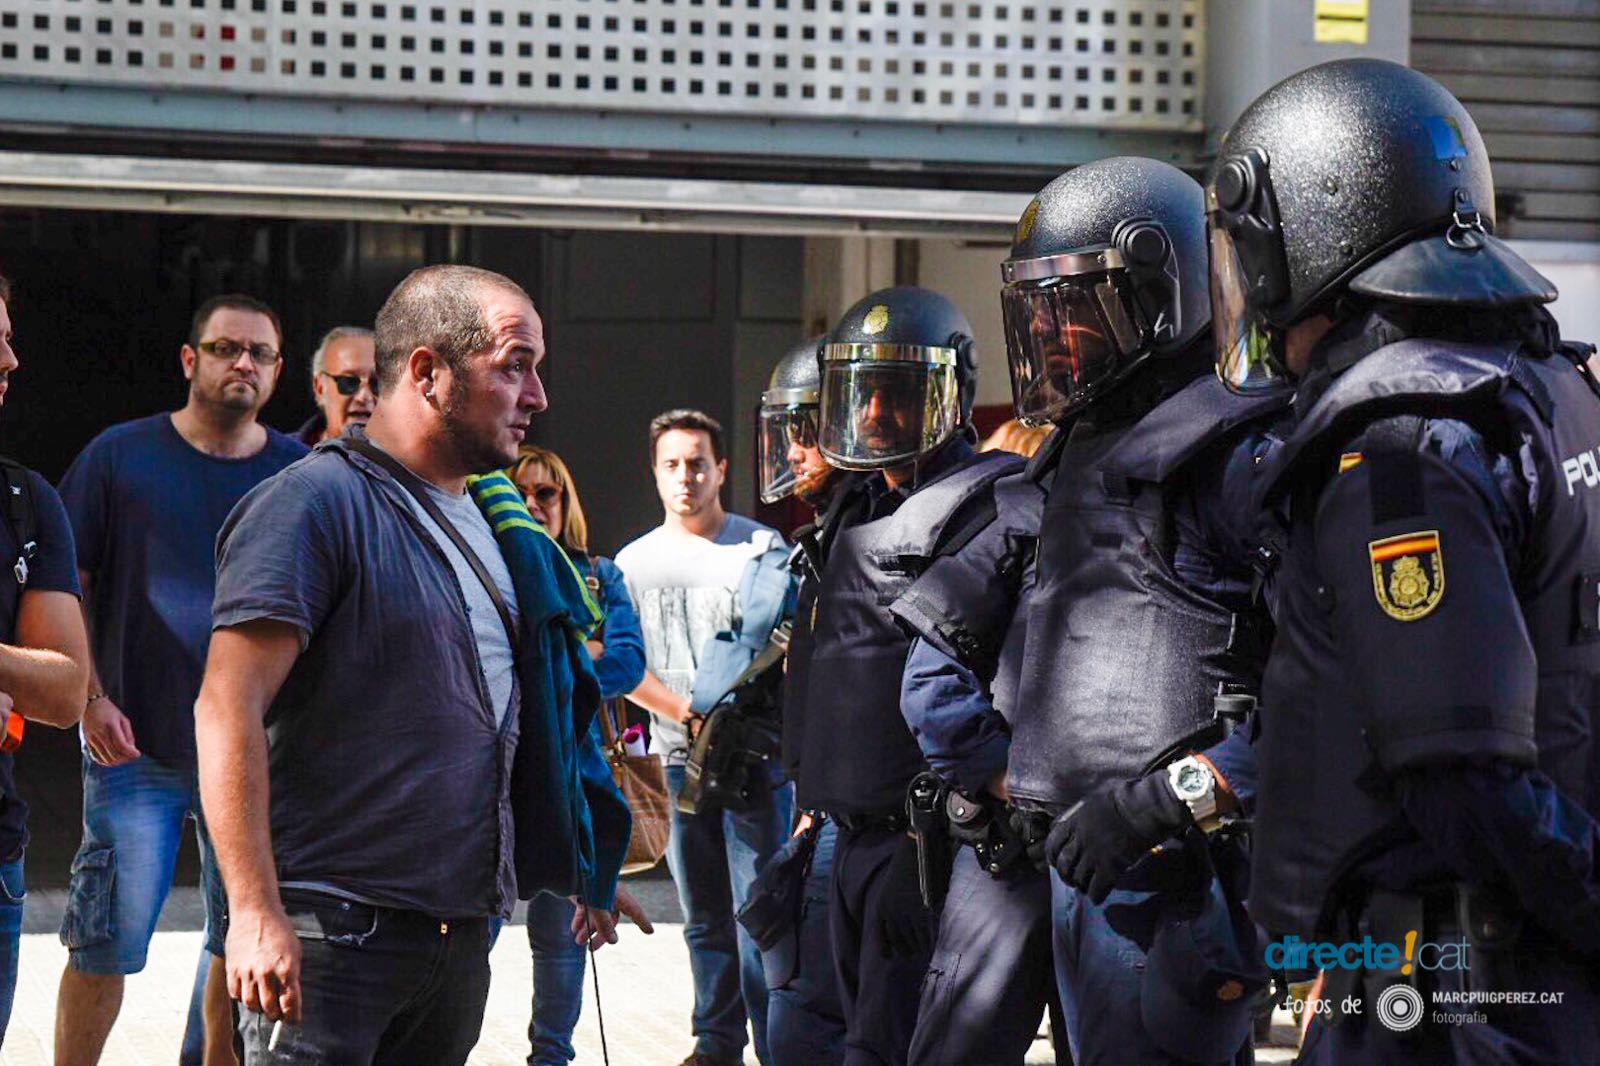 Foto de @marcpuigperez que mostra David Fernández davan la policia espanyola